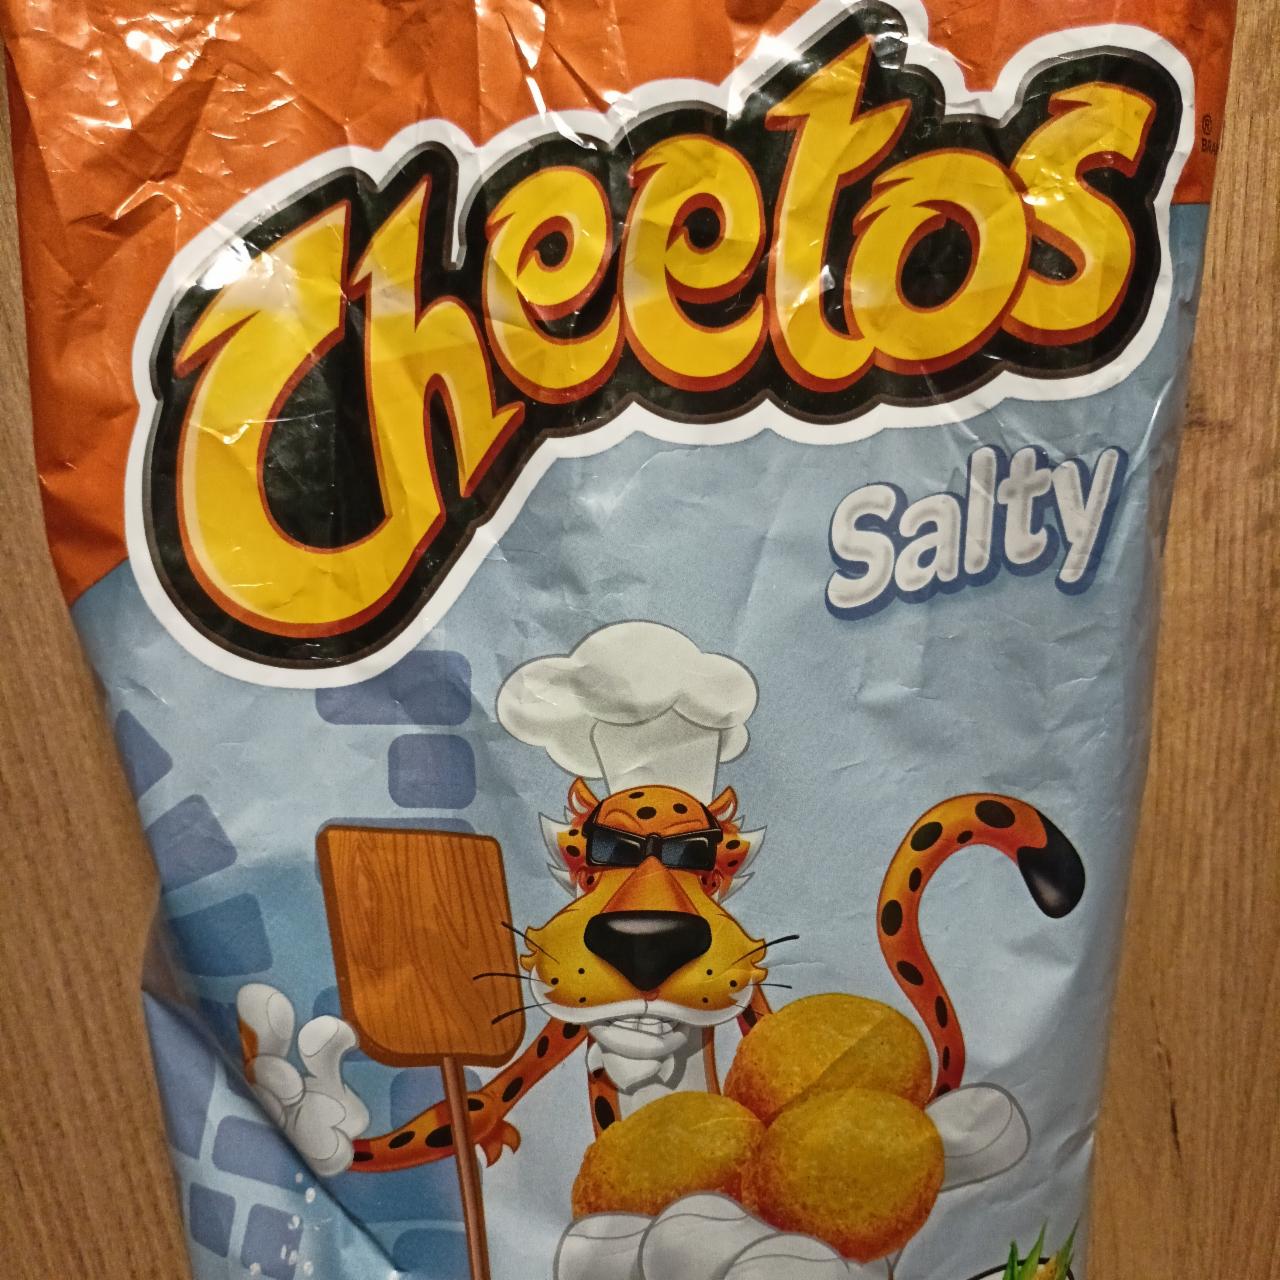 Fotografie - Cheetos Salty